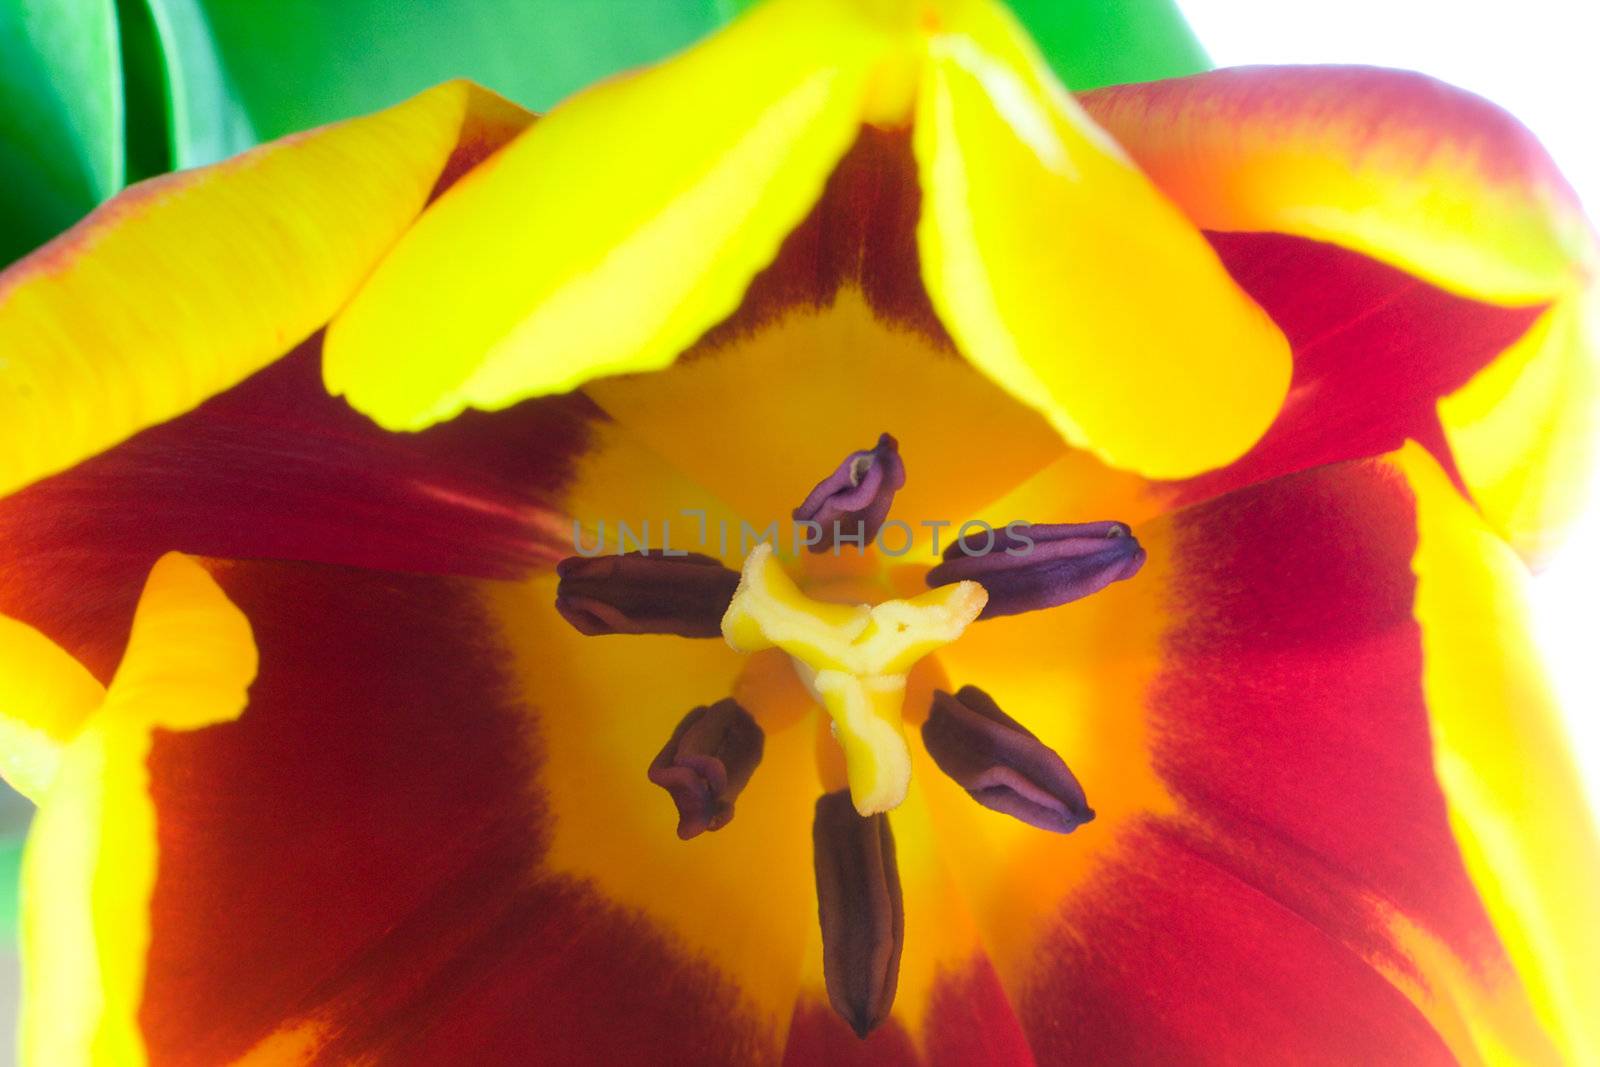 red-yellow tulip, macro shot